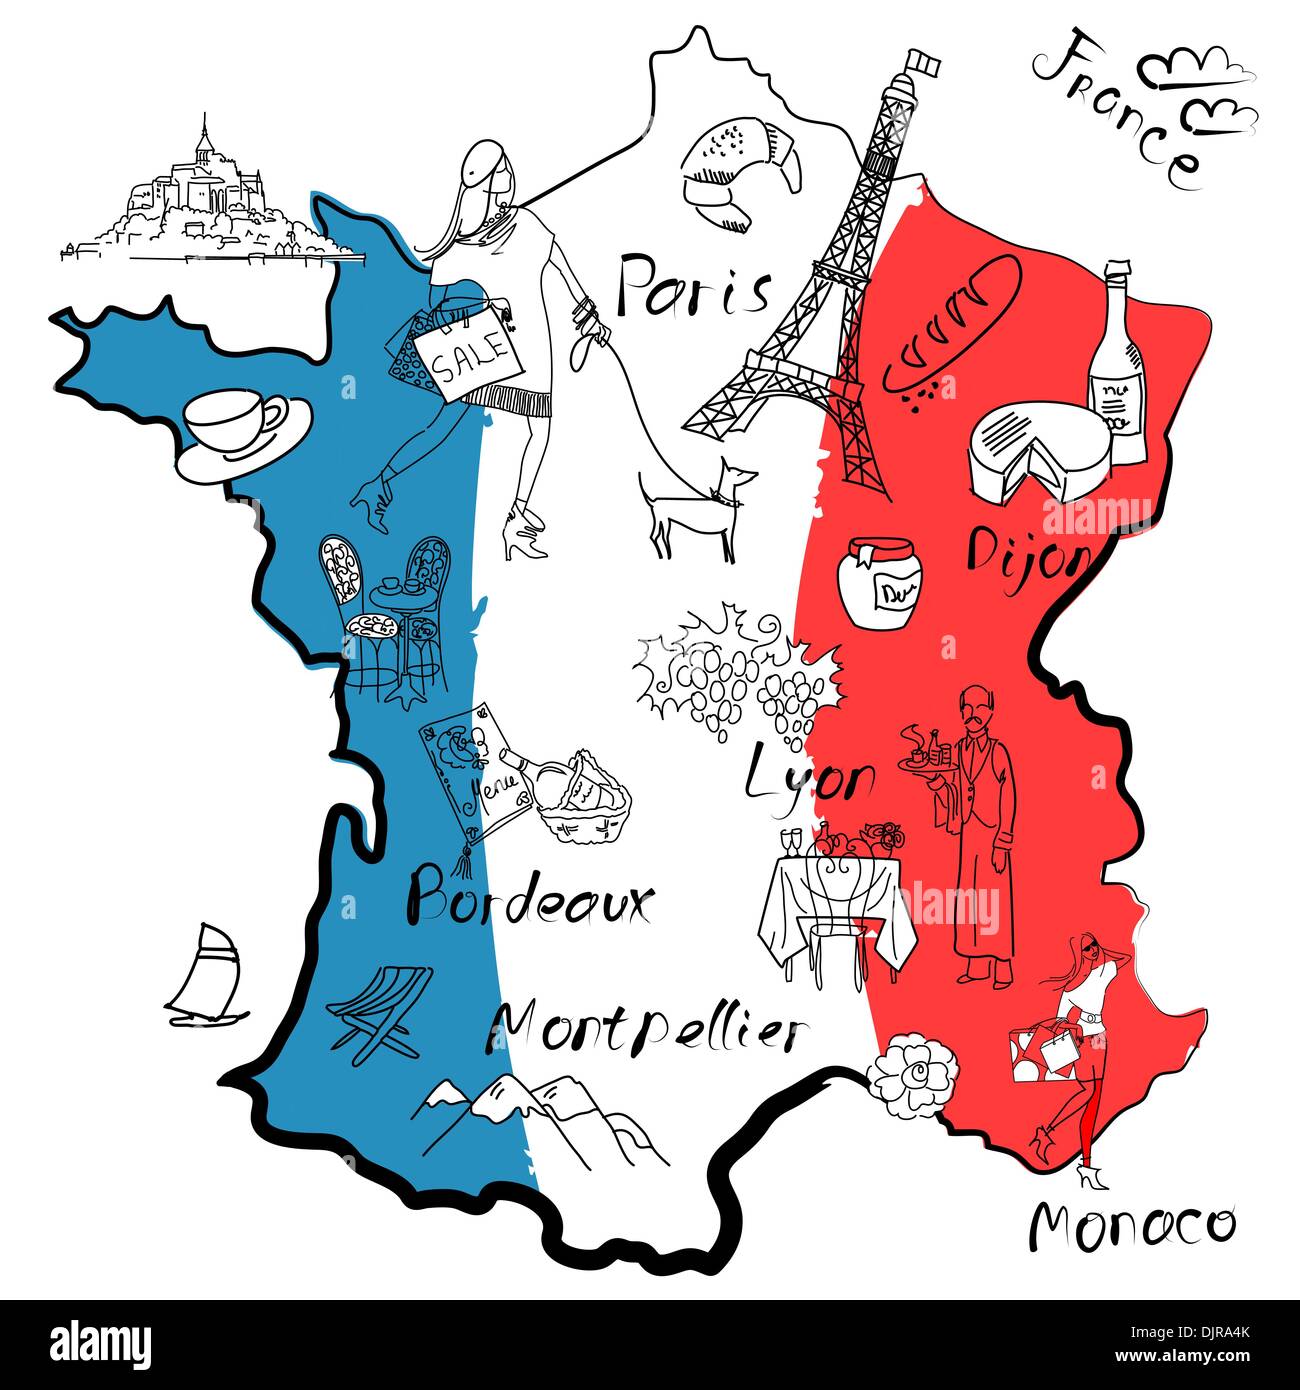 Stilisierte Landkarte von Frankreich. Dinge, denen verschiedene Regionen Frankreichs berühmt sind. Stock Vektor